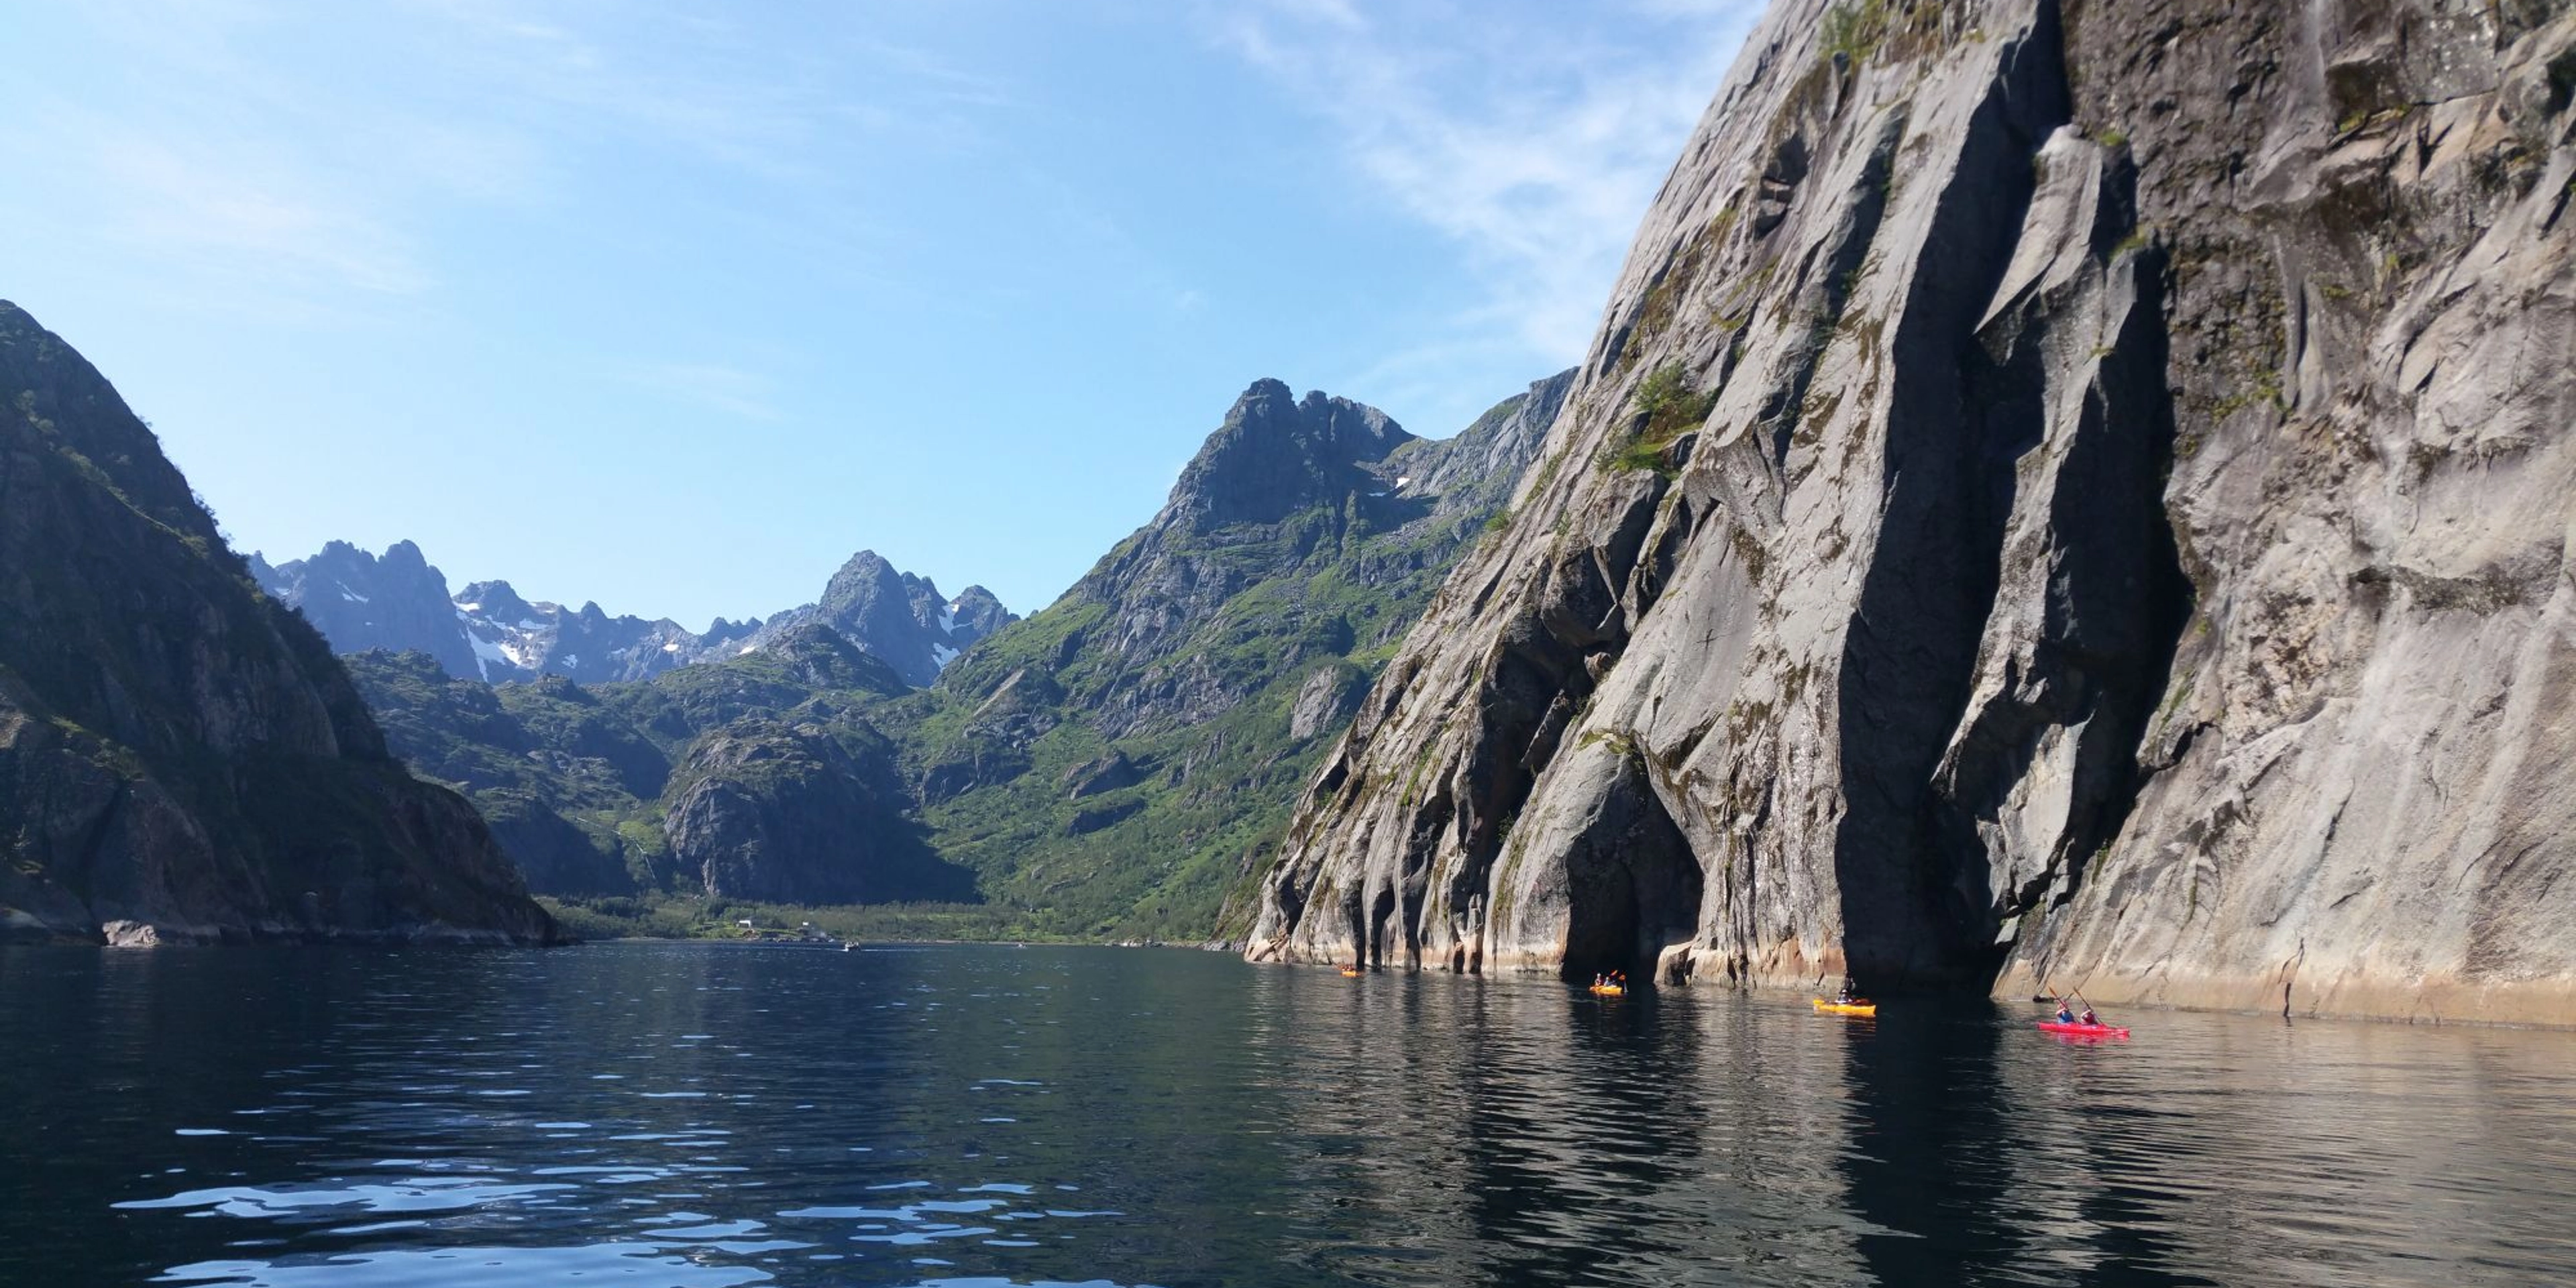 Things to do in Svolvær -Kayaking in Lofoten, Norway